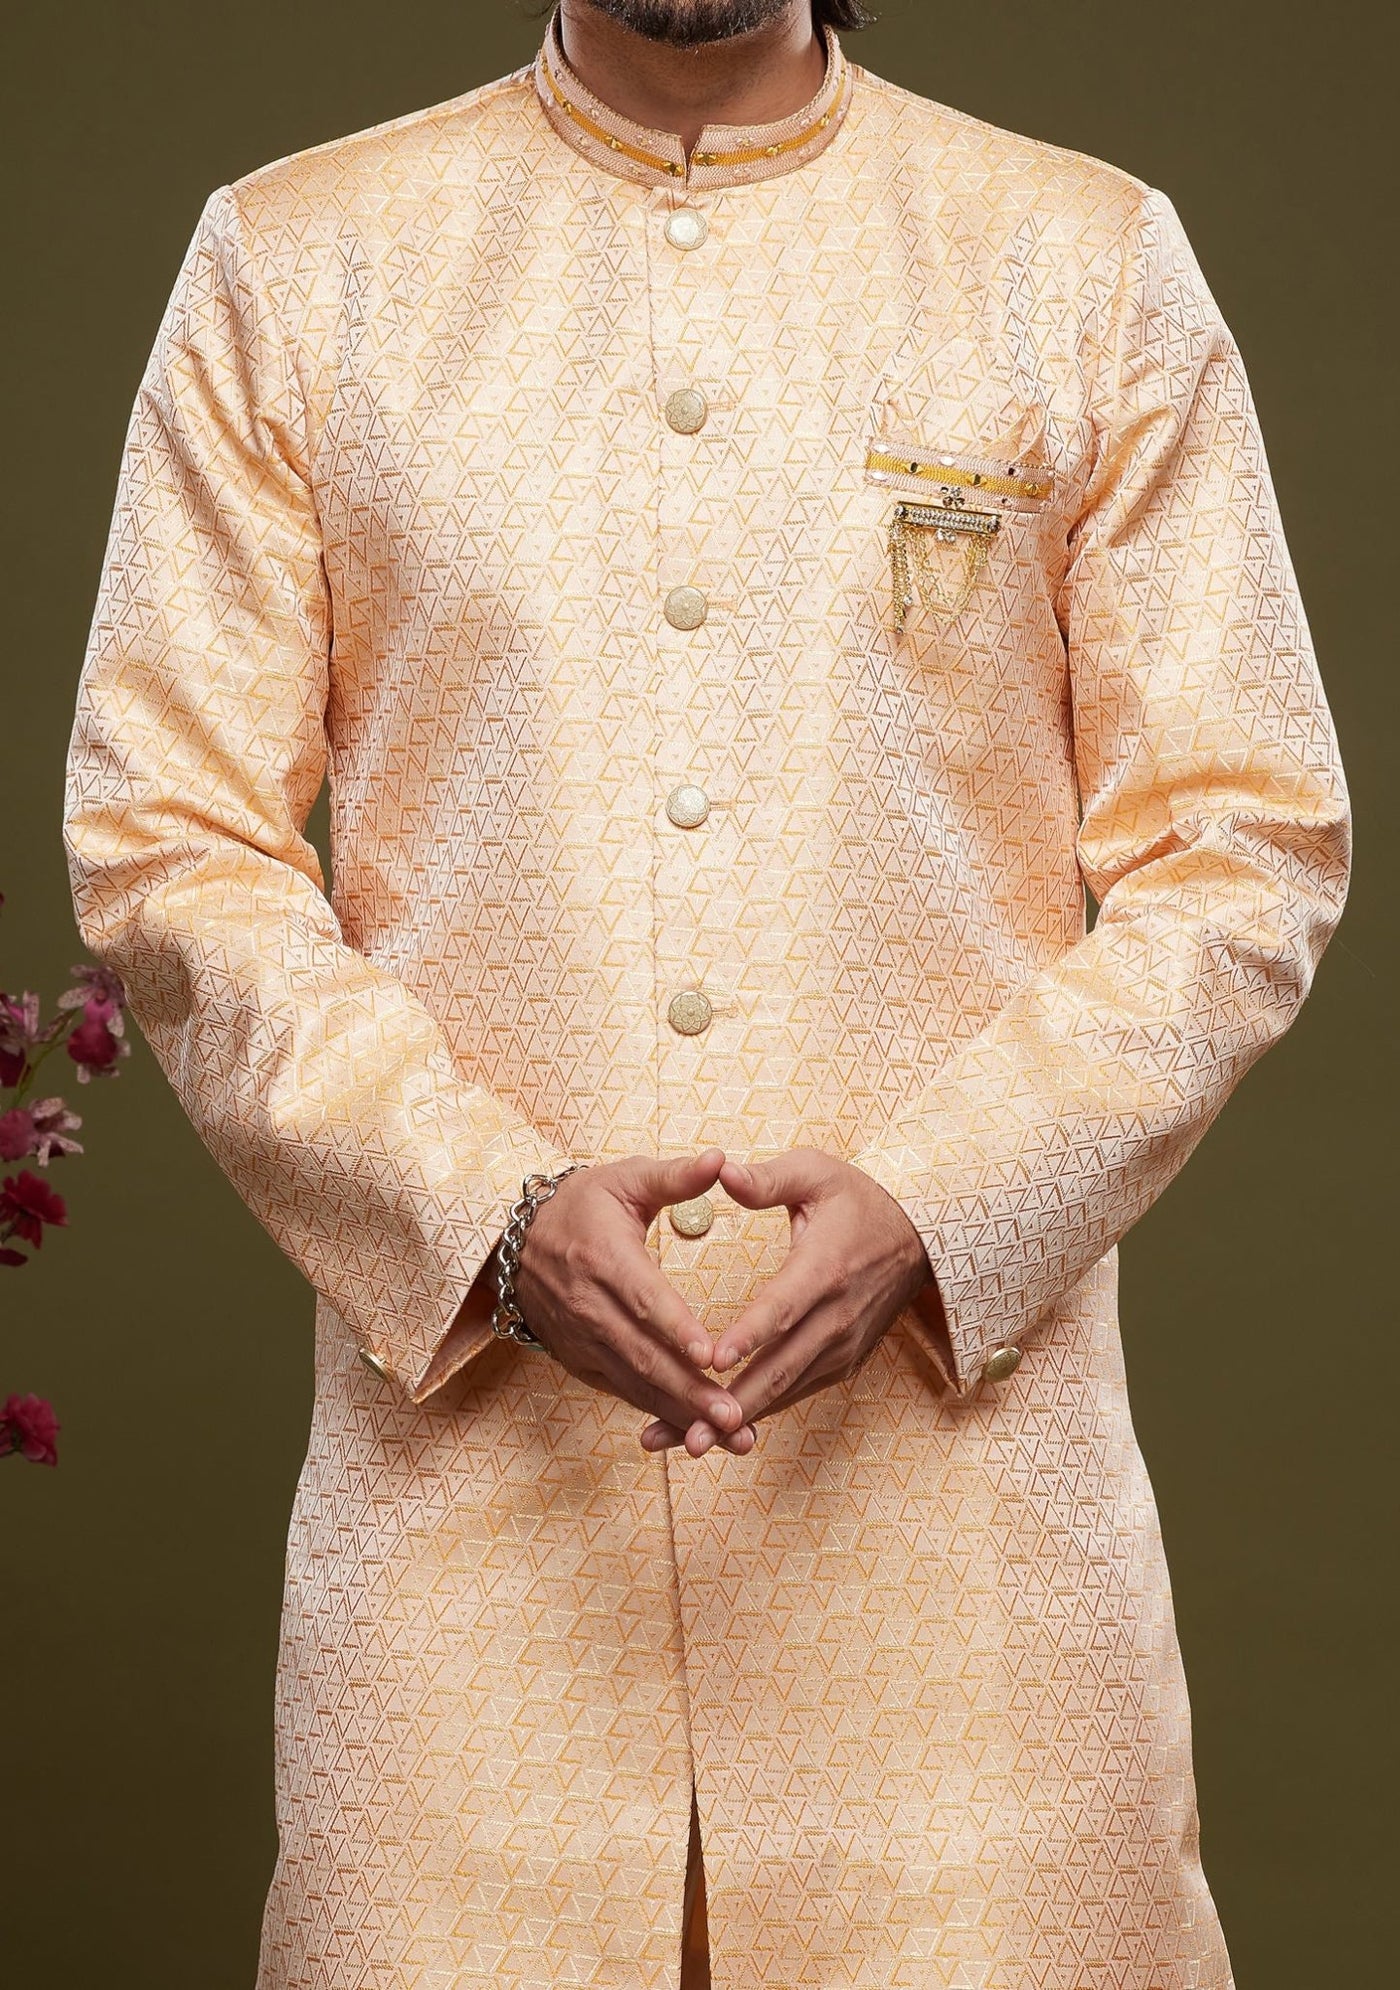 Men's Semi Indo Western Party Wear Sherwani Suit - db23859